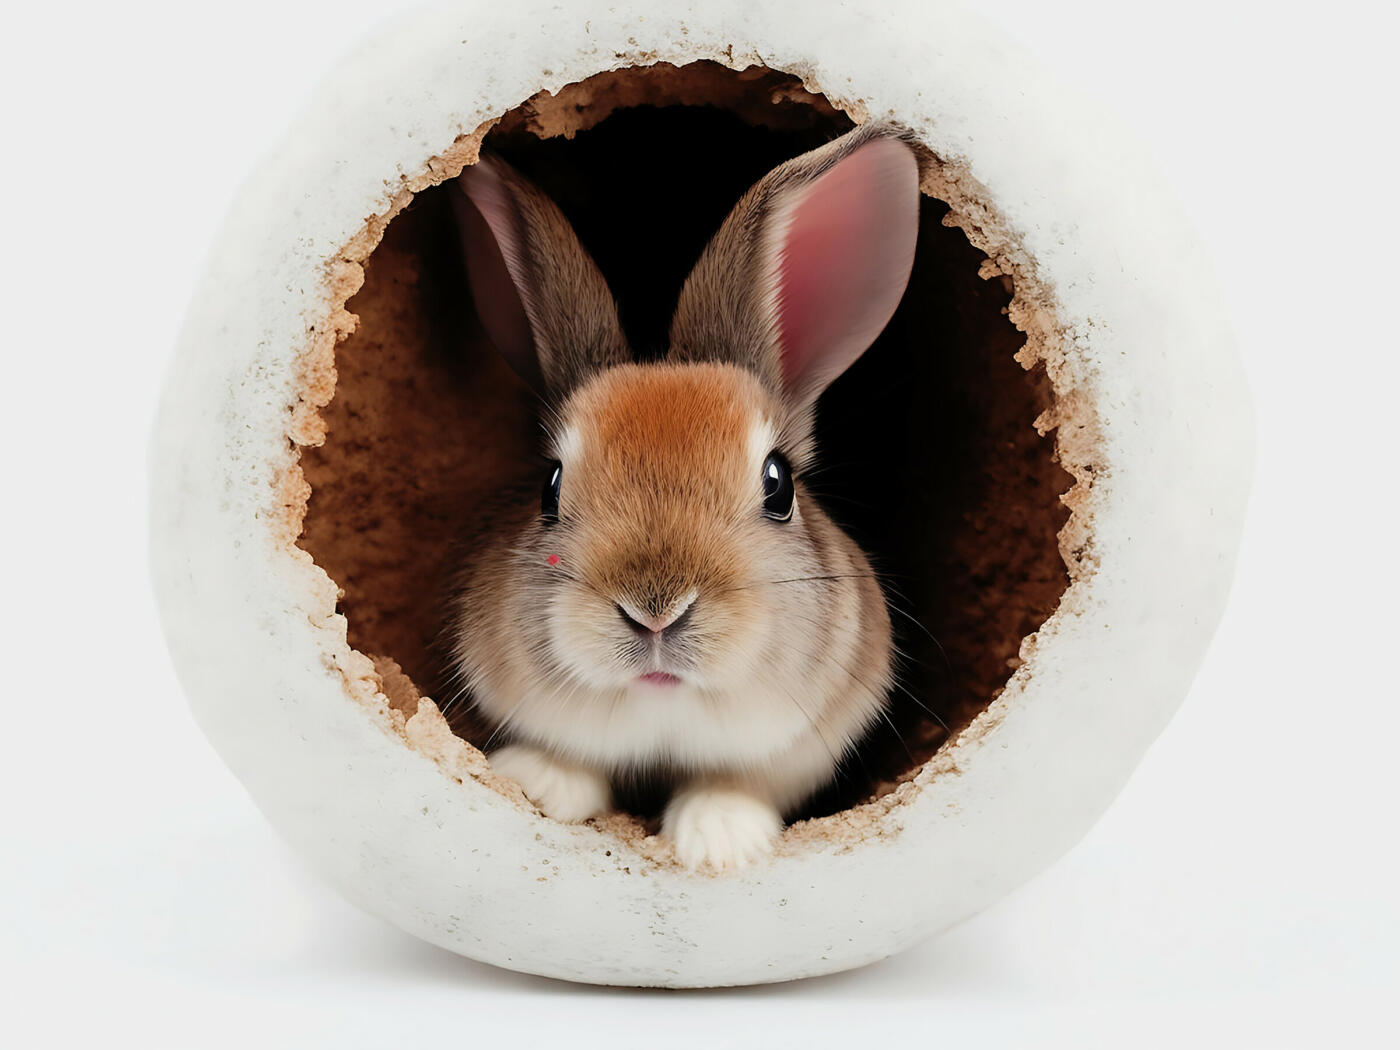 Spiel und Spaß für Langohren: Sicheres und anregendes Spielzeug für Kaninchen